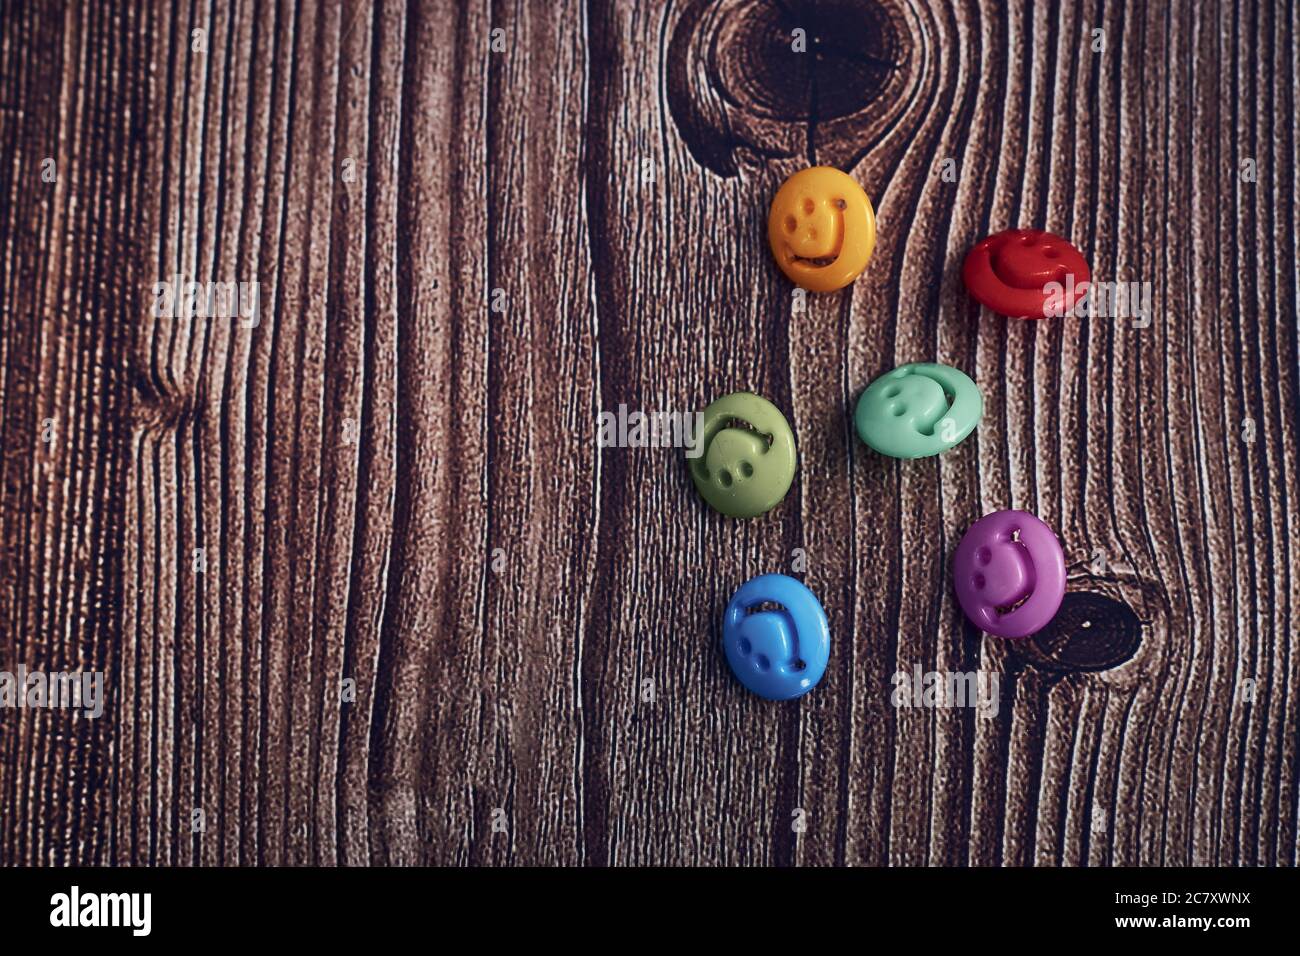 Primo piano di bottoni colorati con volti sorridenti su uno tavolo